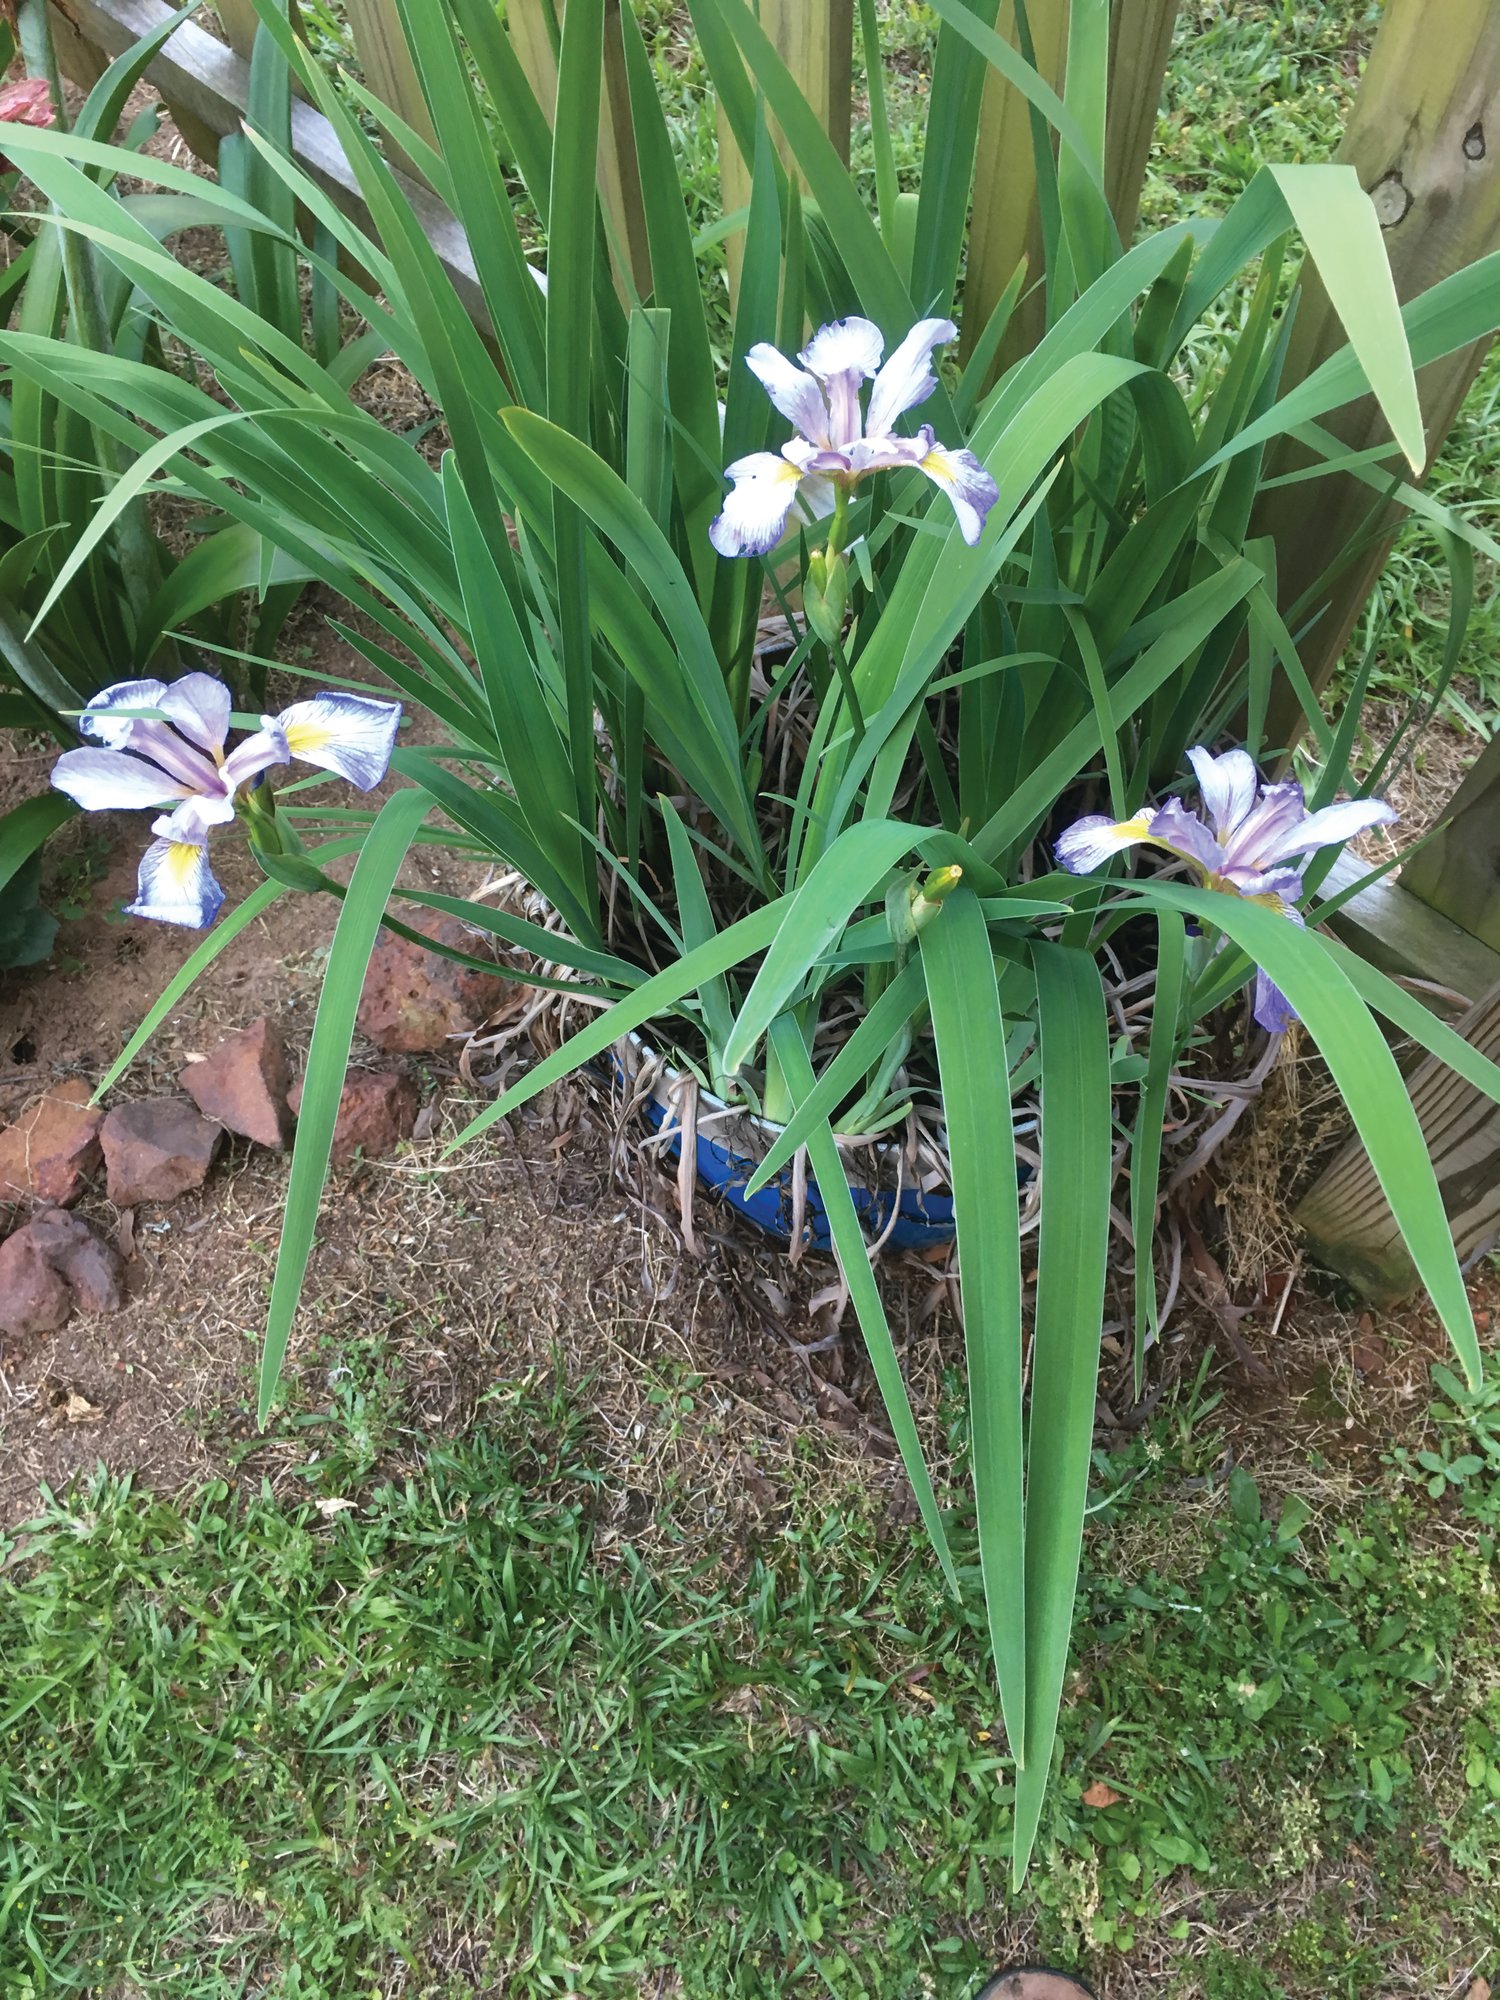 Blue flag irises bloom in Ginger's garden.